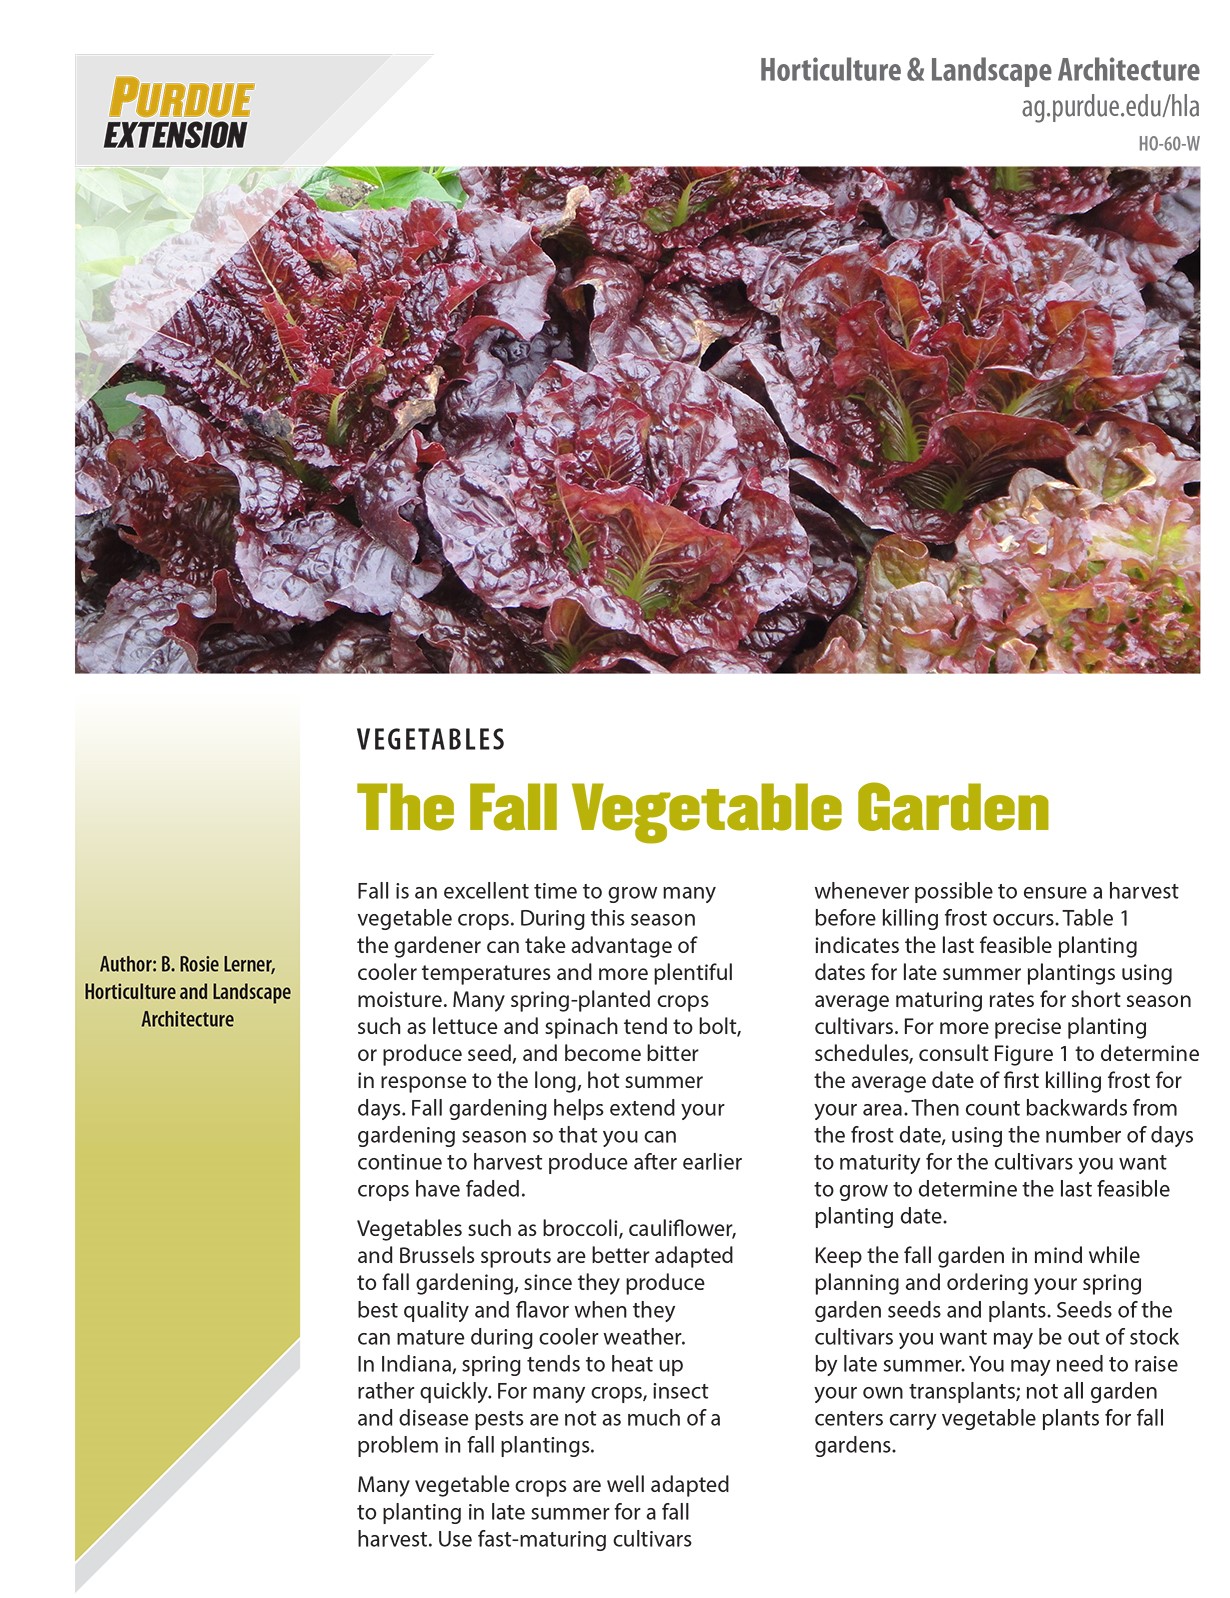 The Fall Vegetable Garden